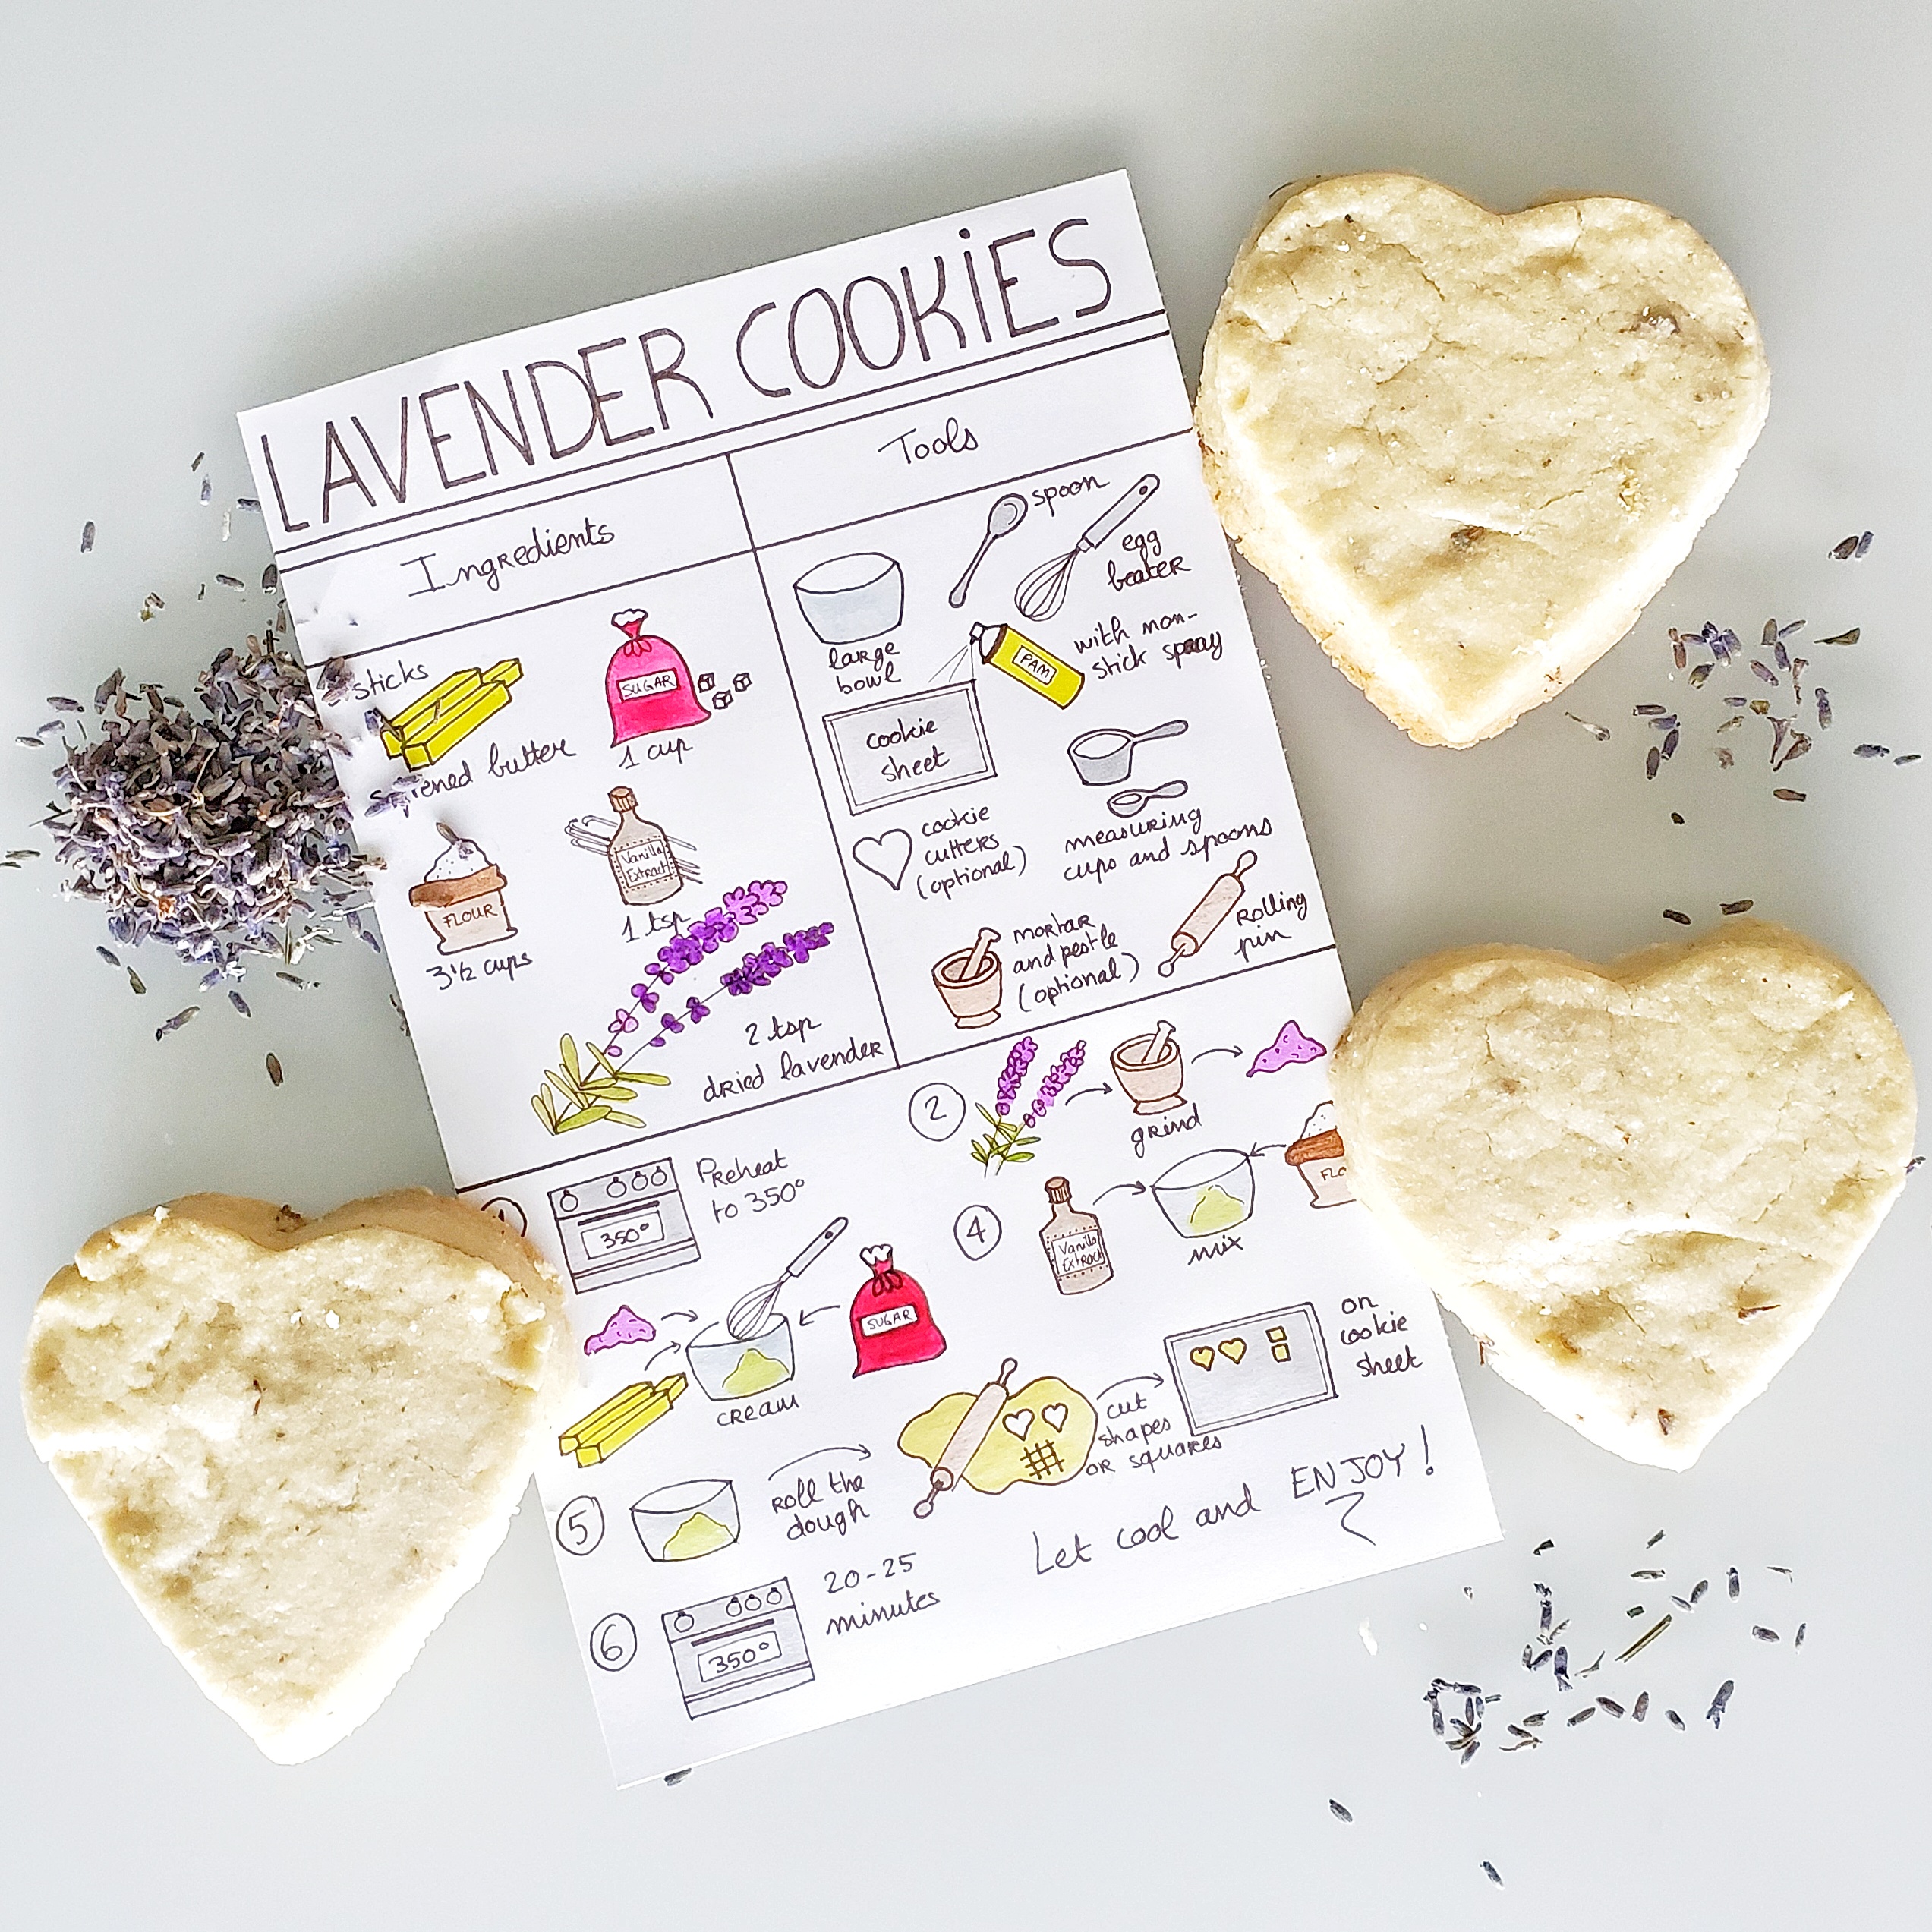 438-lavender-cookies.jpg